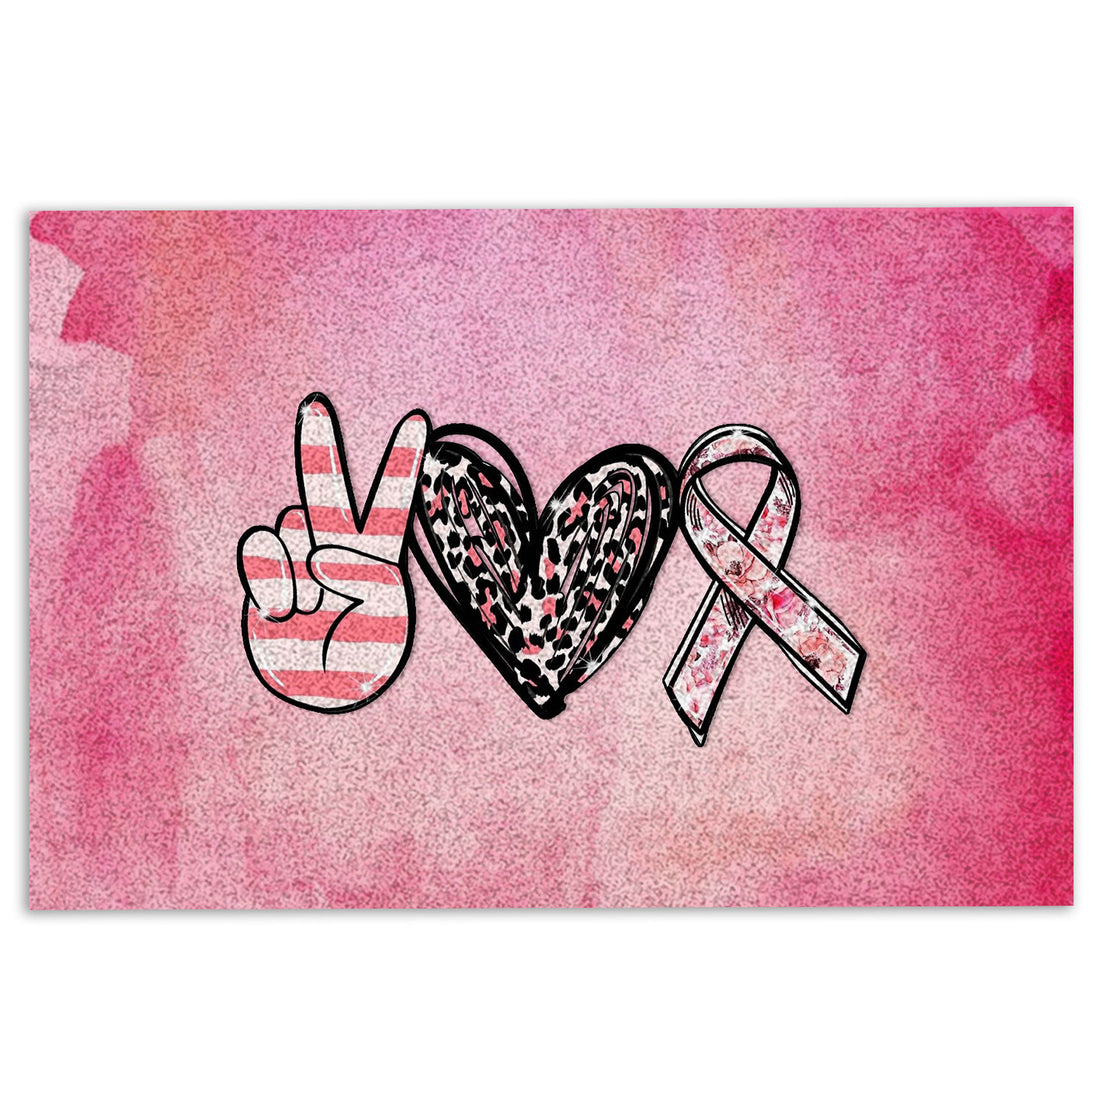 Ohaprints-Doormat-Outdoor-Indoor-Peace-Love-Cure-Breast-Cancer-Awareness-Pink-Ribbons-Leopard-Rubber-Door-Mat-994-18'' x 30''